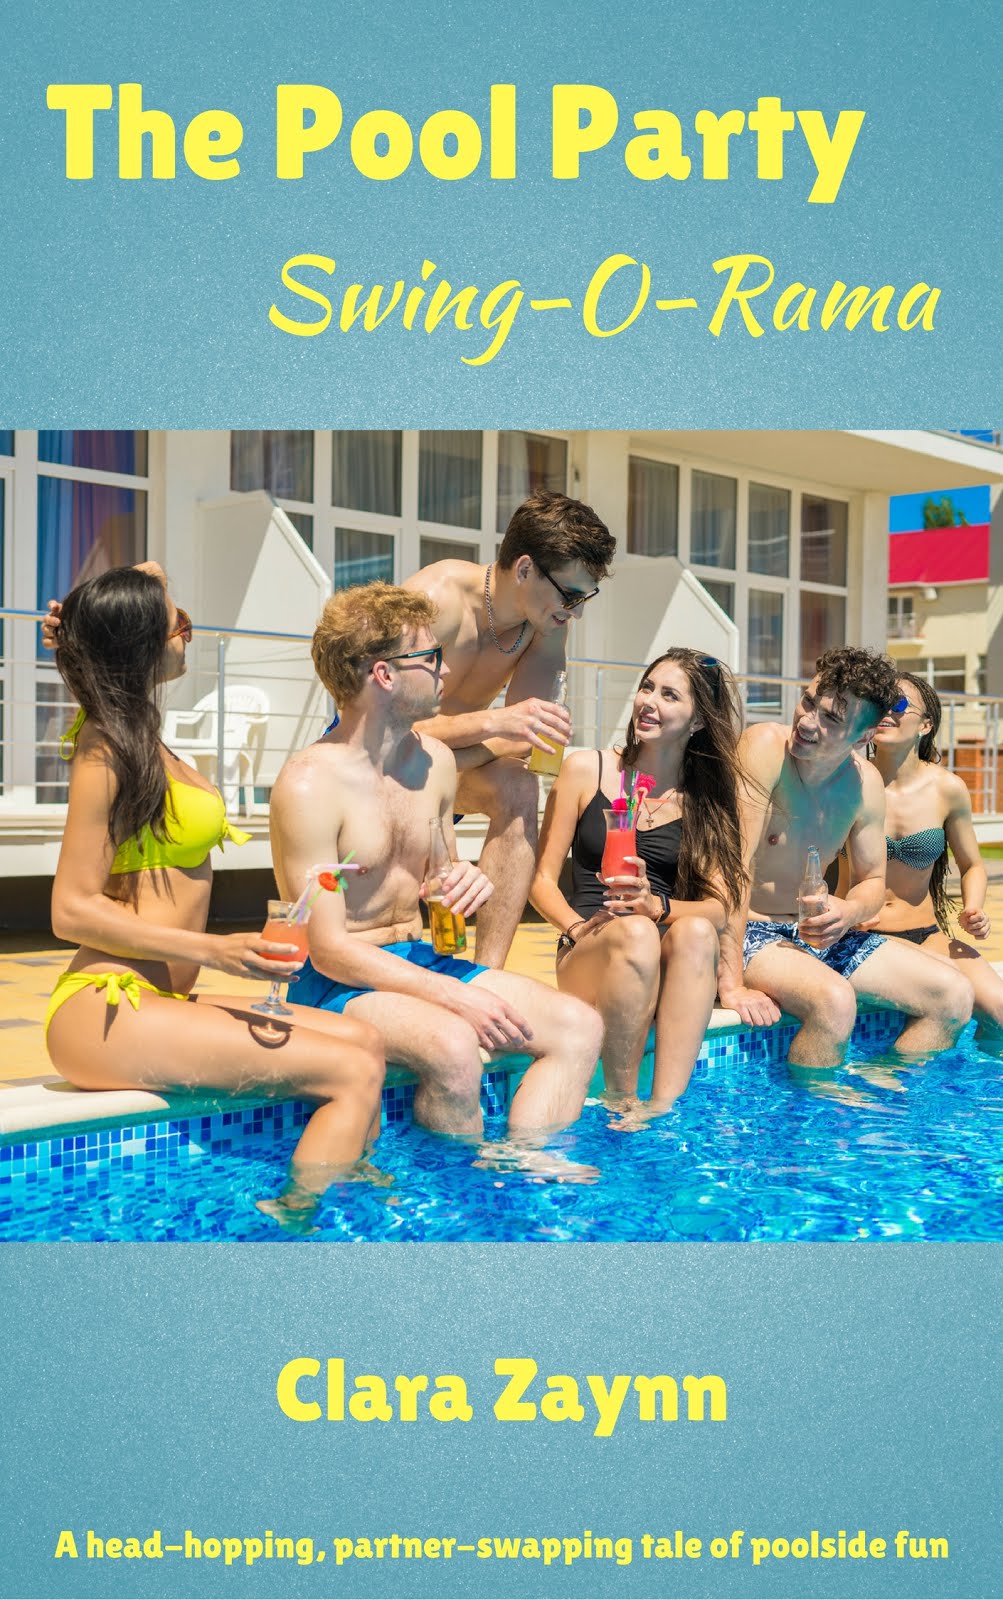 The Pool Party Swing-O-Rama